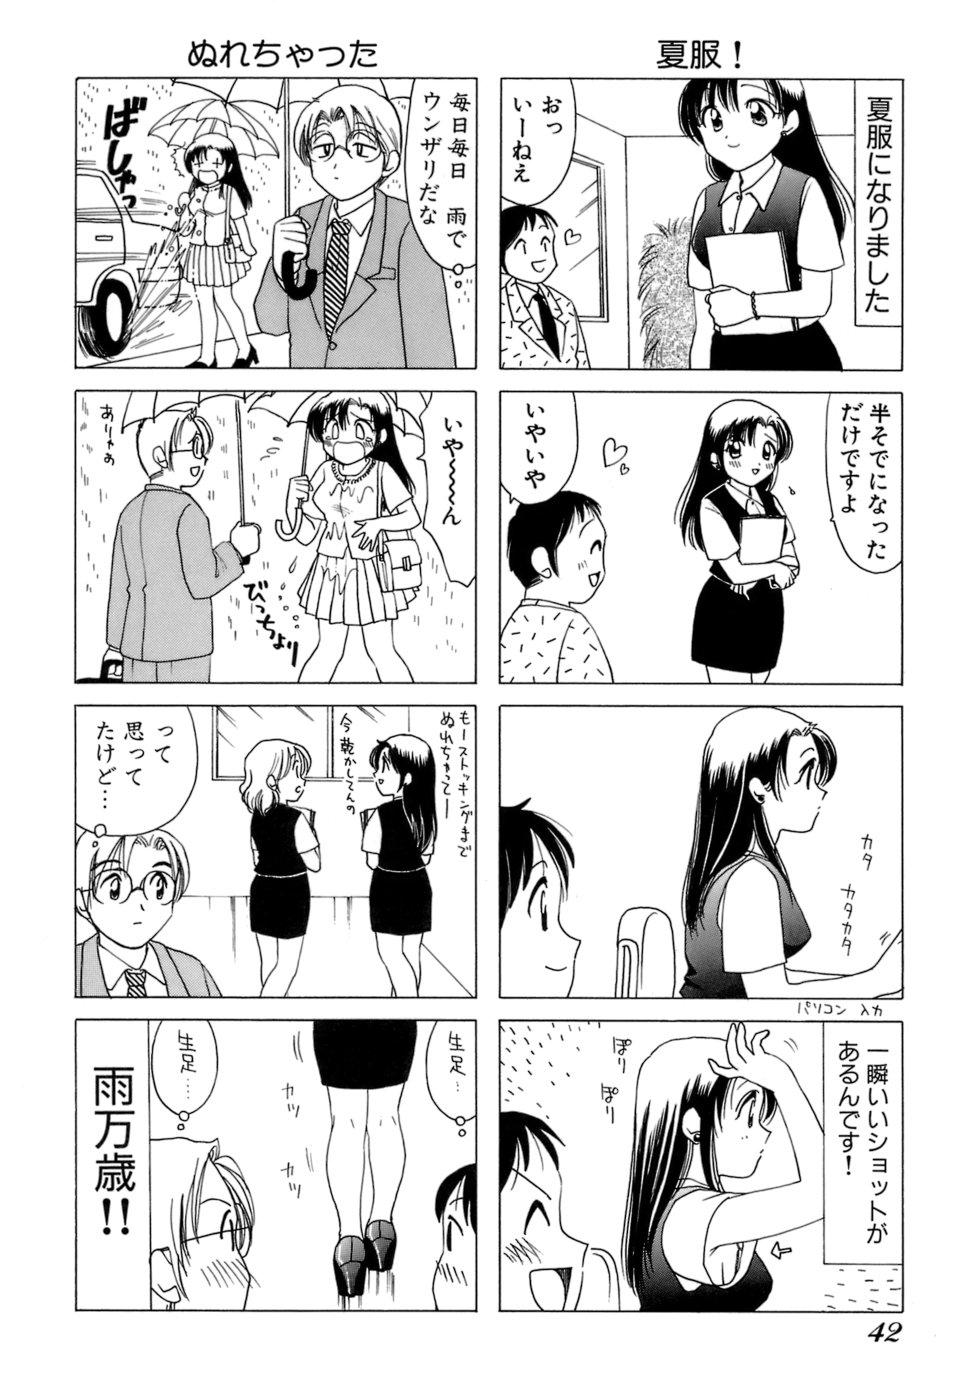 Eriko-kun, Ocha!! Vol.01 45